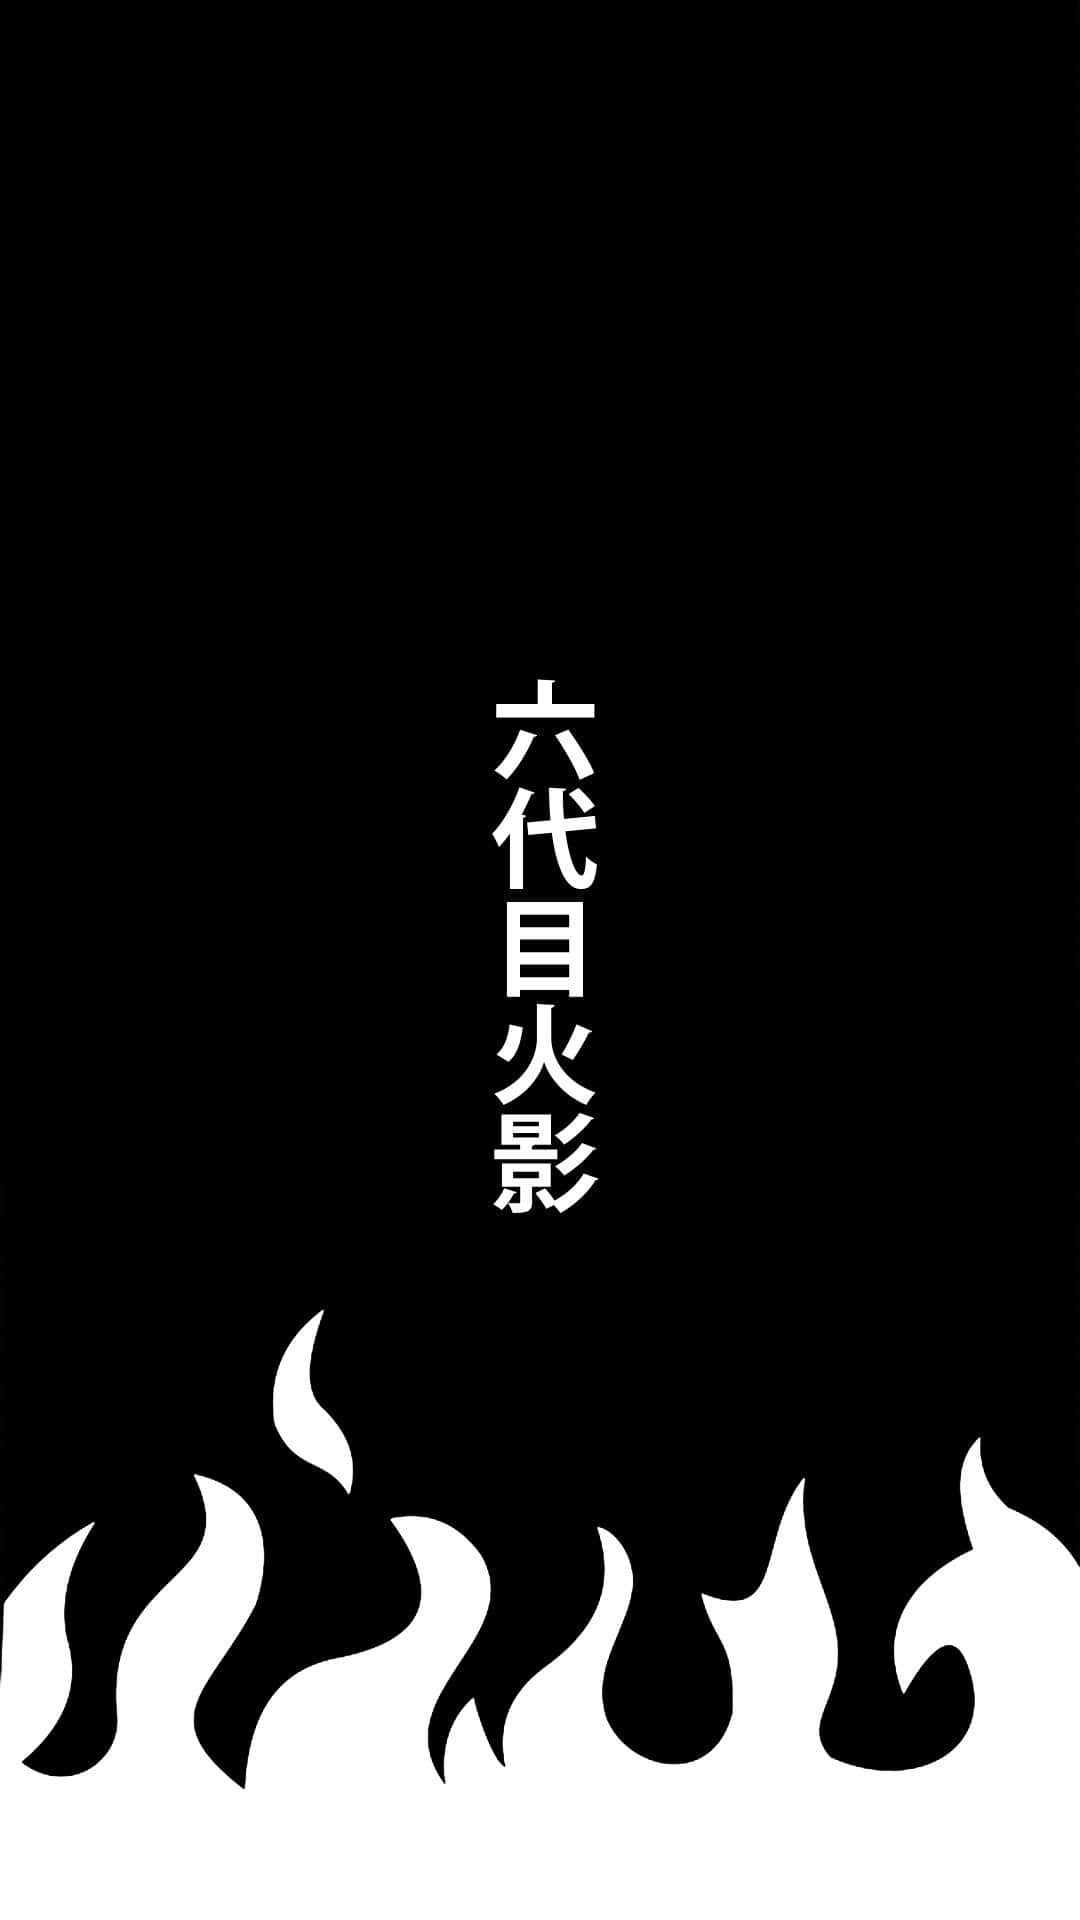 Animeduell - Naruto Und Sasuke In Schwarz-weiß Wallpaper